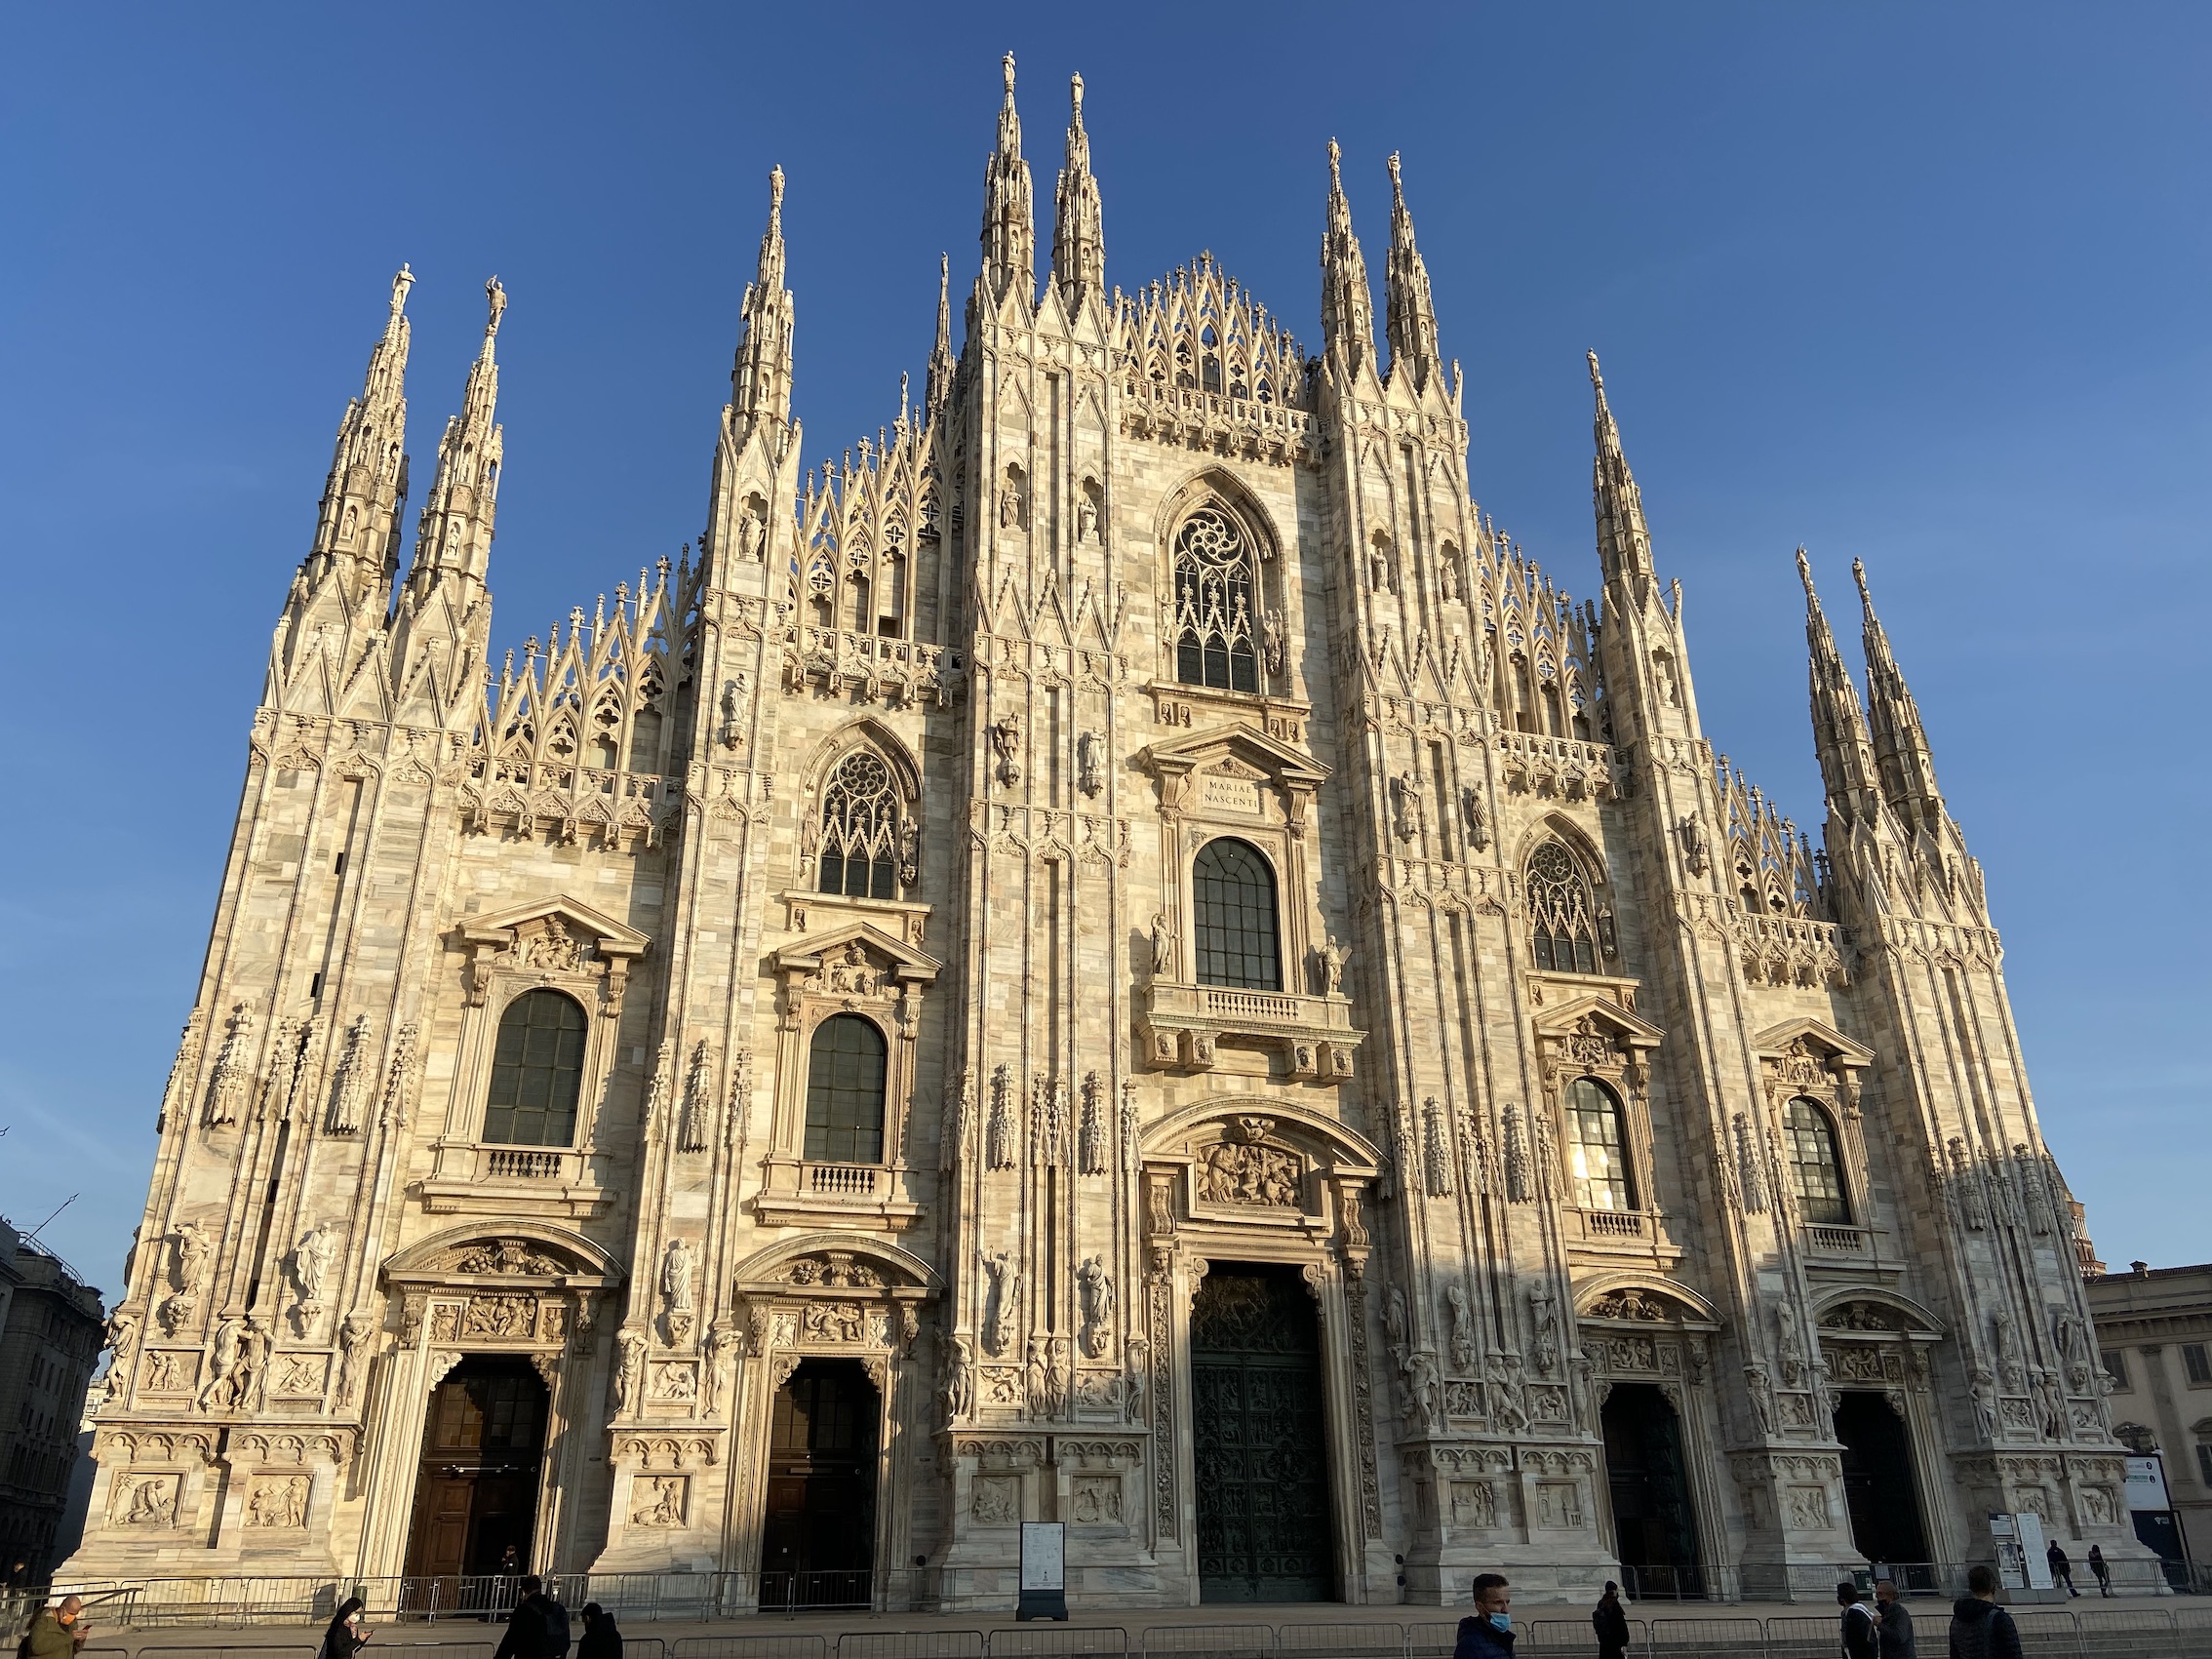 Roteiro de 1 dia em Milão na Itália: O que fazer na cidade com pouco tempo?